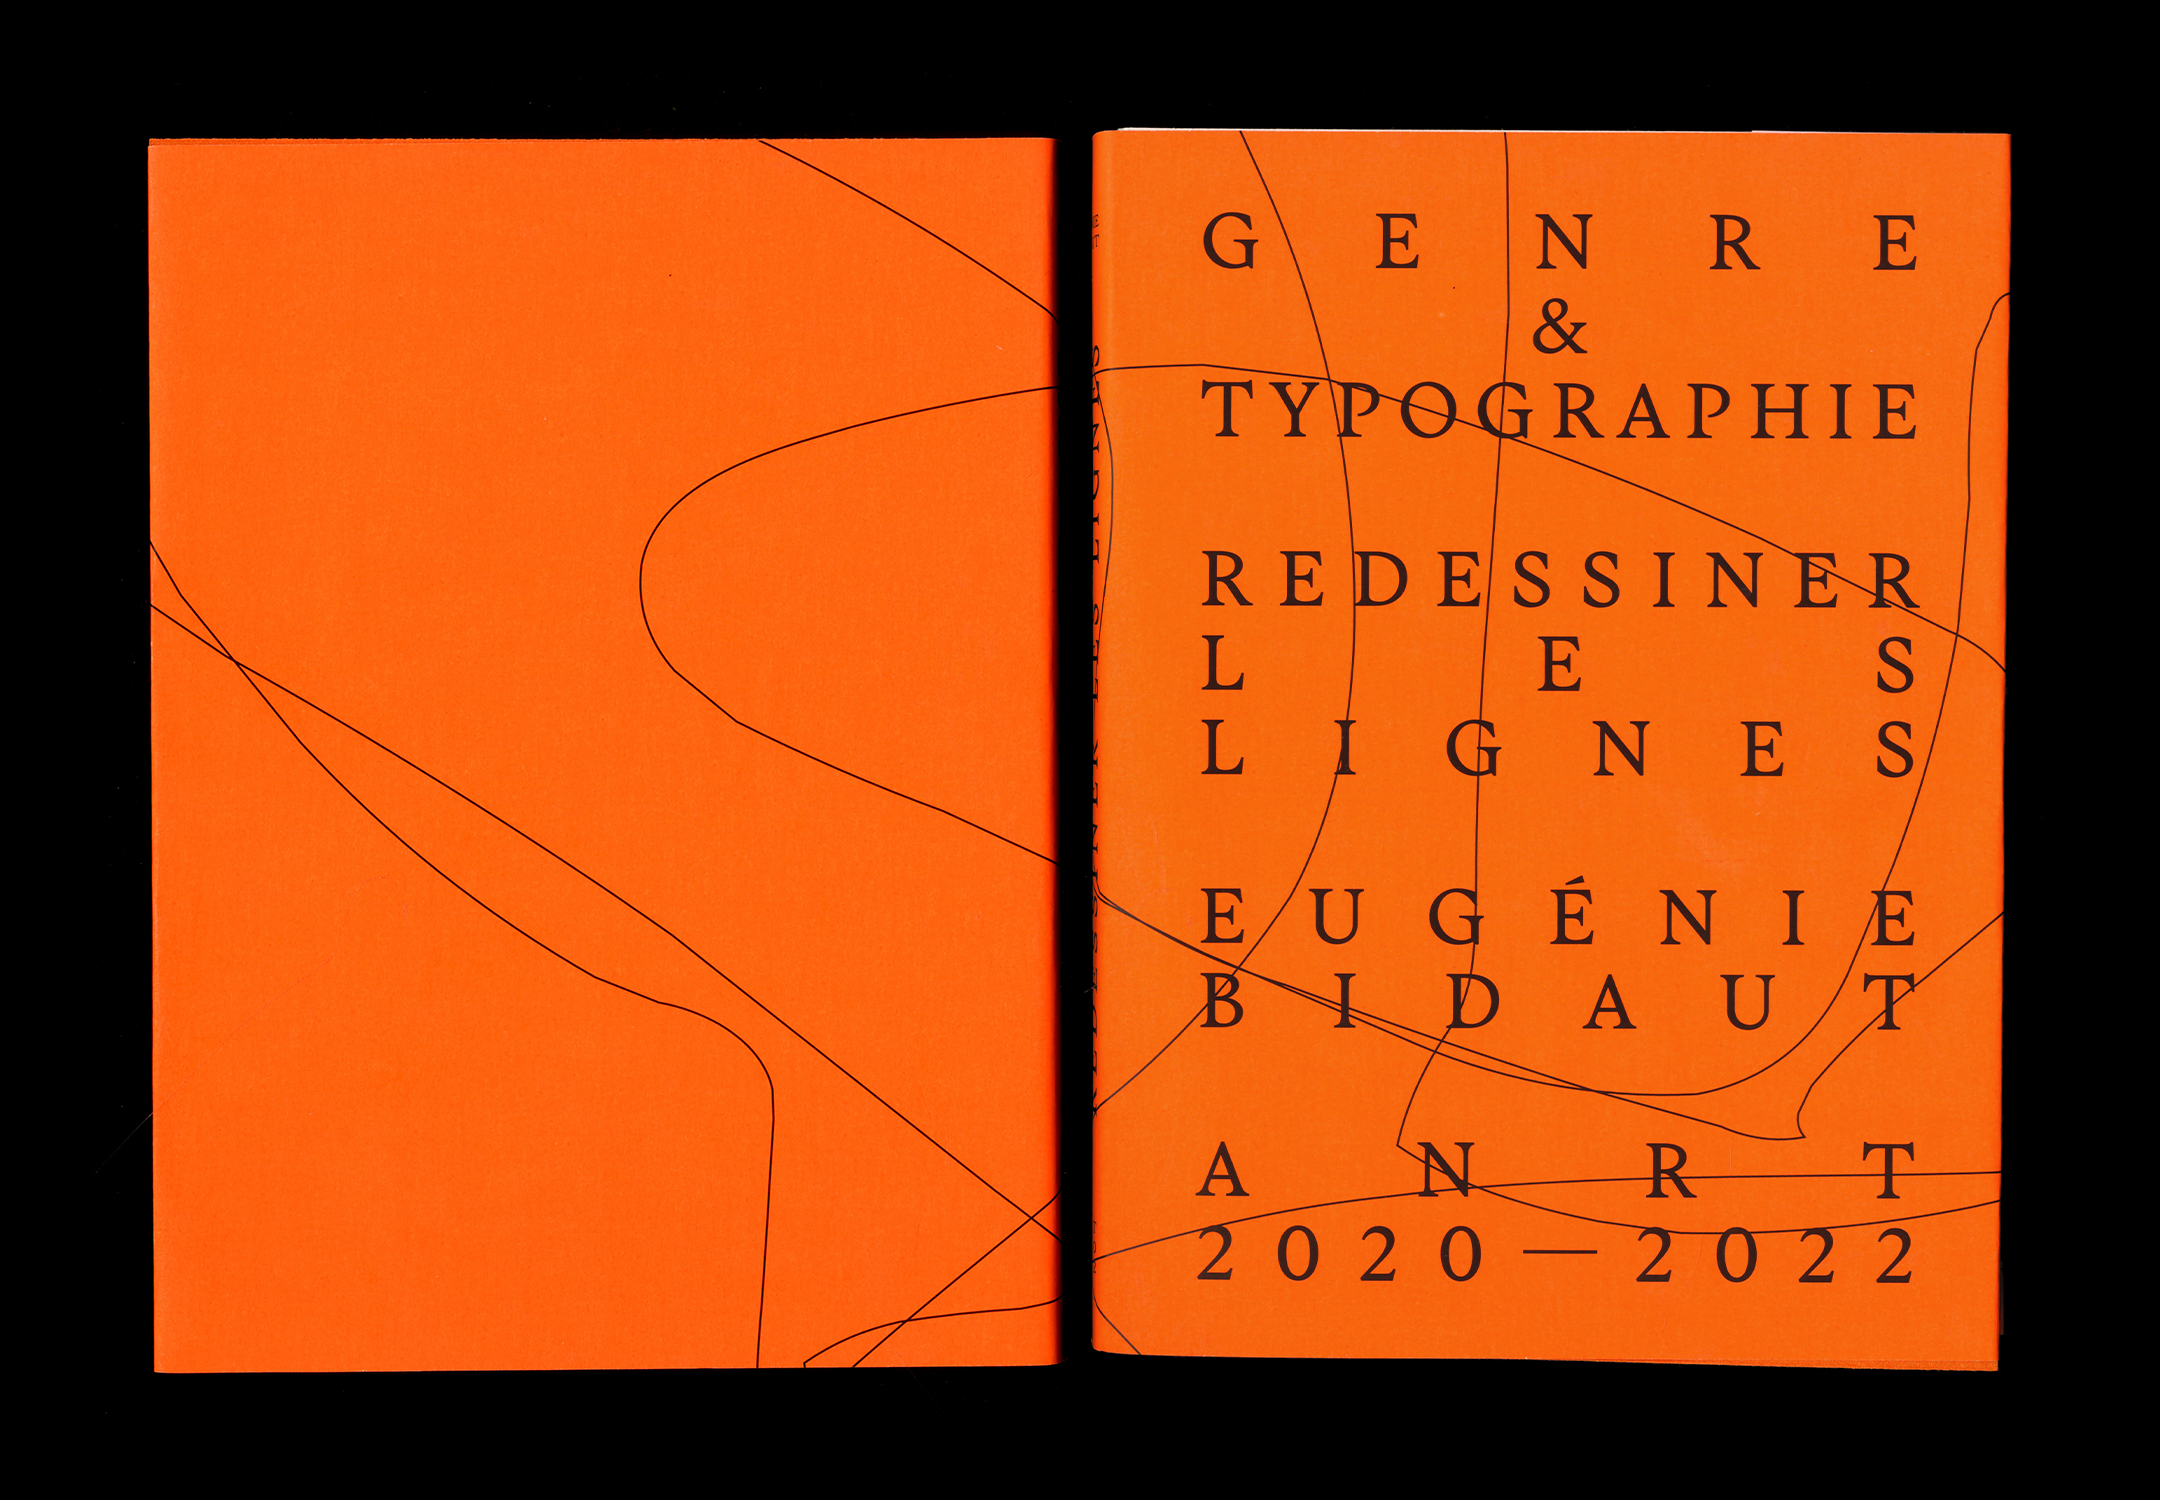 Couverture et quatrième de couverture imprimées sur du papier orange fluo